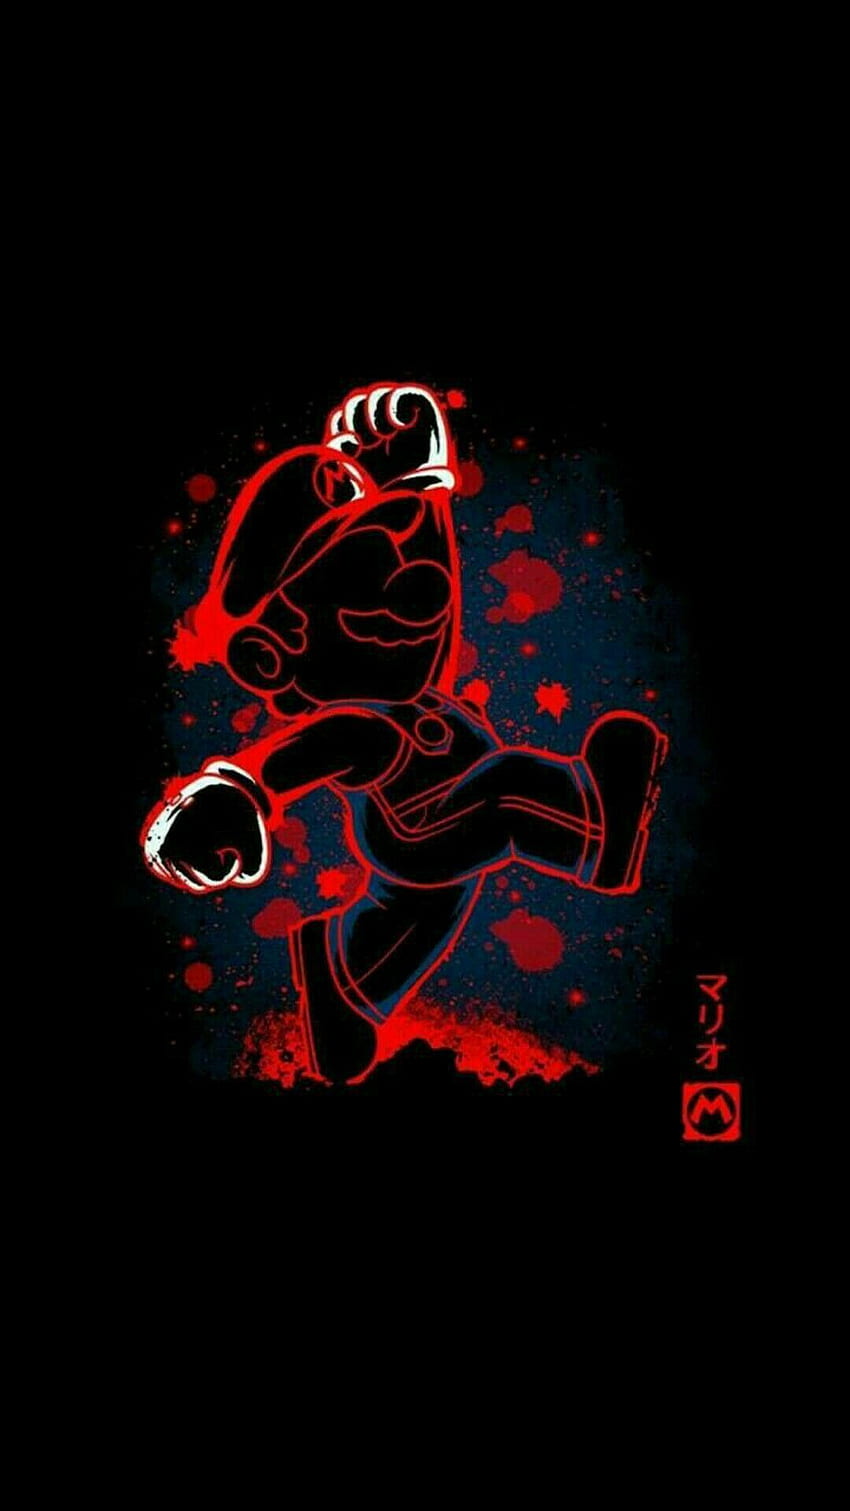 Jefrid Panesso on Phone Background - Cartoon 06. Mario art, Super mario art, Mario and luigi y Mario Cool fondo de pantalla del teléfono